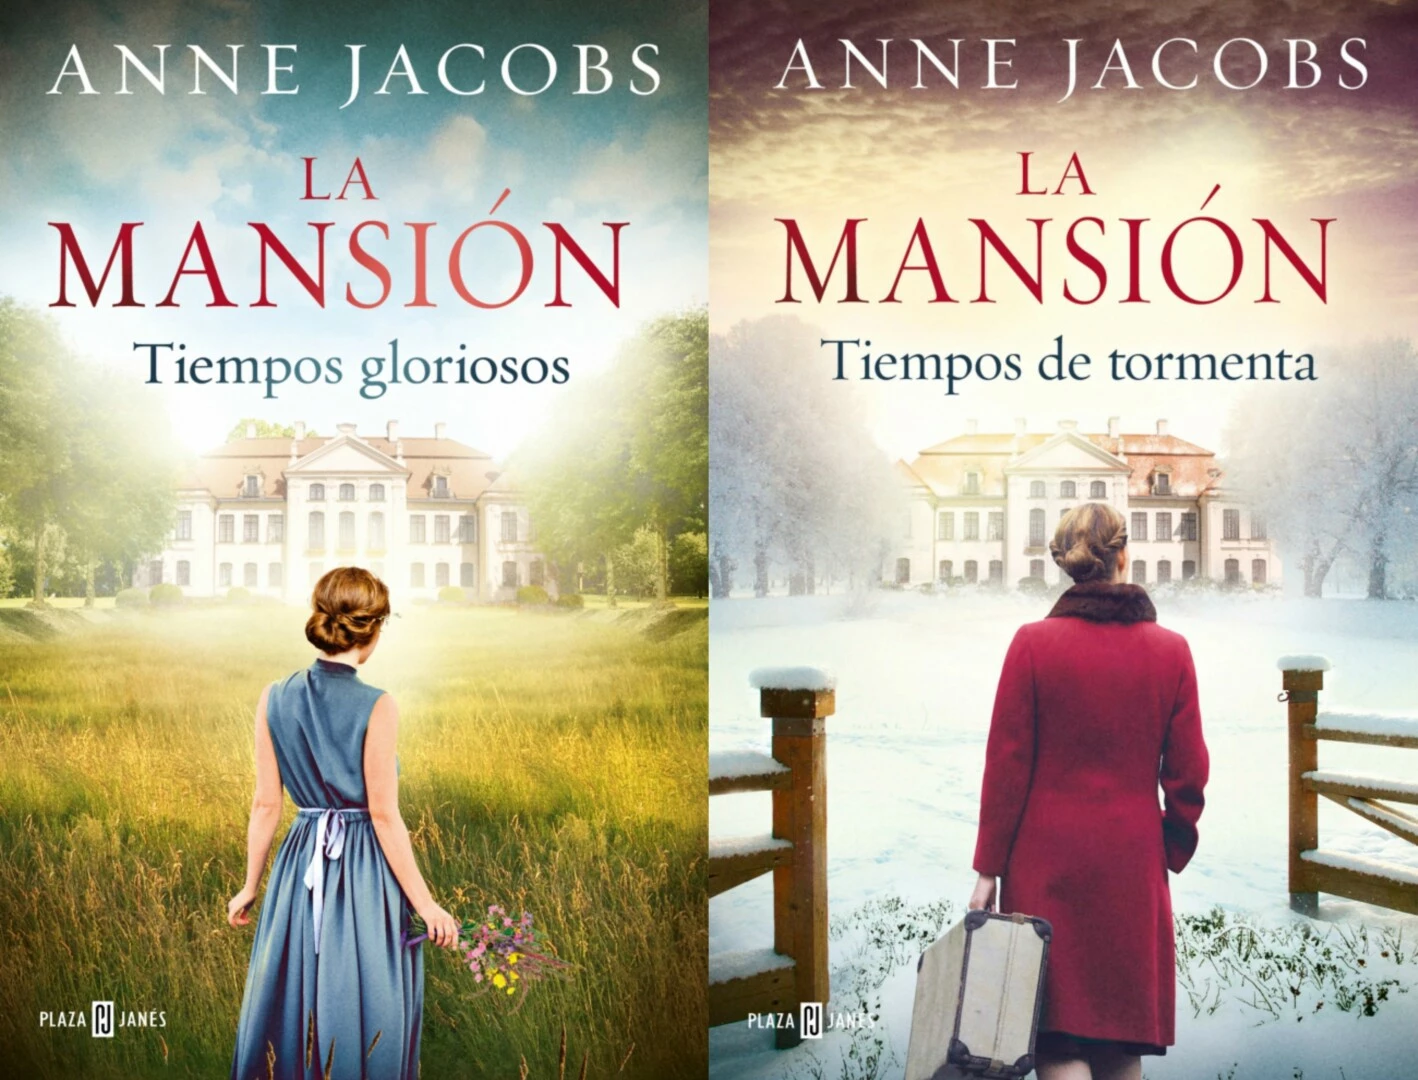 Reseña: 'Reencuentro en la Villa de las Telas', la mansión y la saga  cierran sus puertas con esta novela